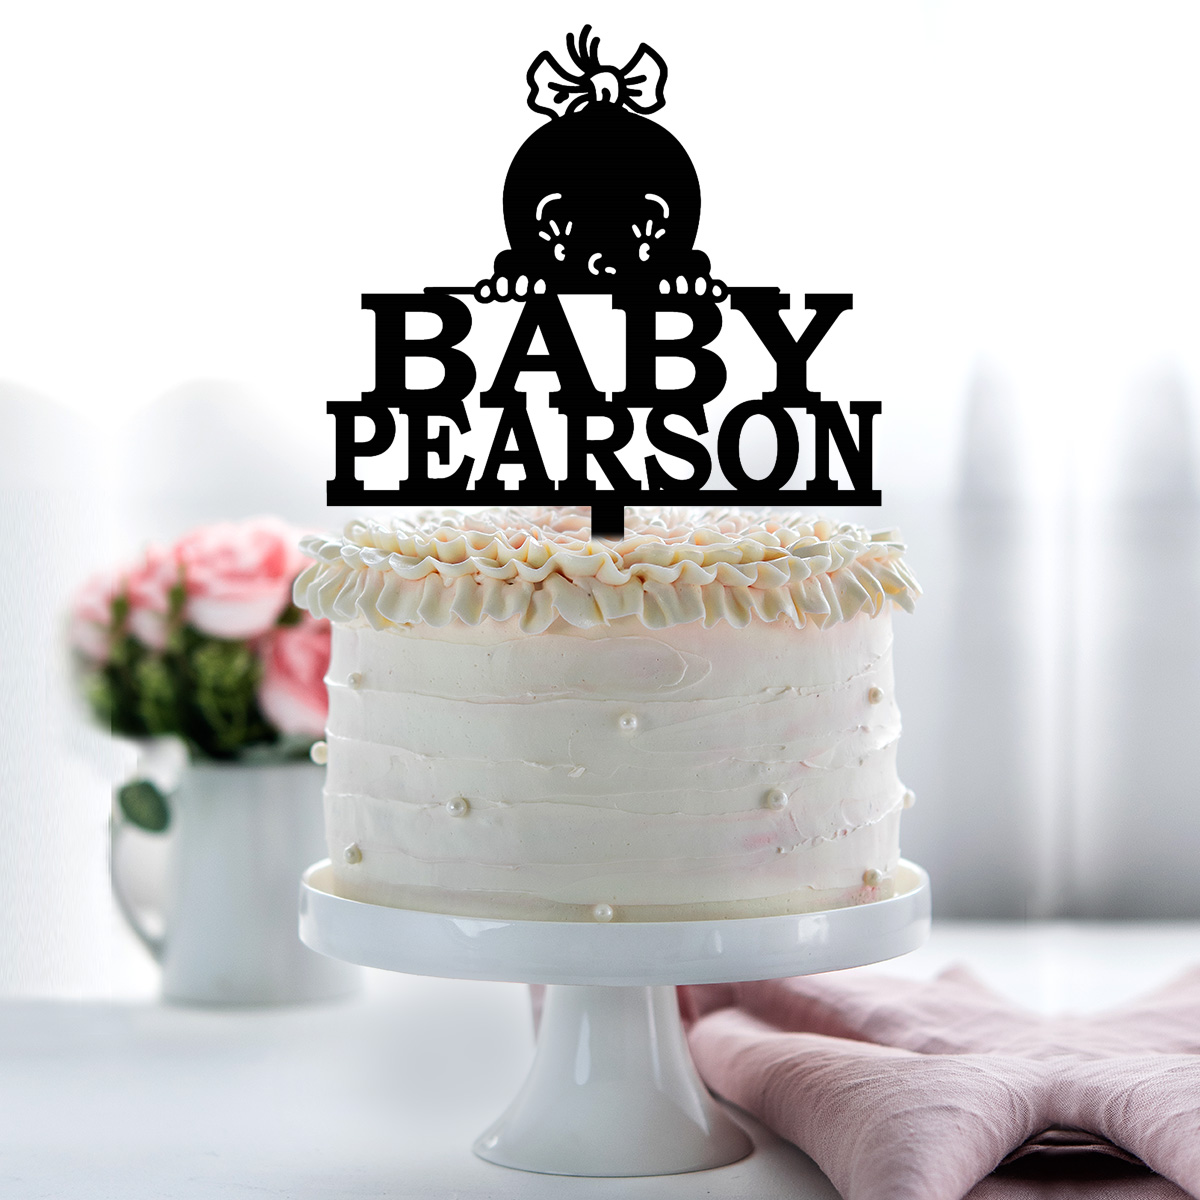 Karen Davies Sugarcraft Cake Decorating - Make Cute Baby Faces - Tutorial -  YouTube